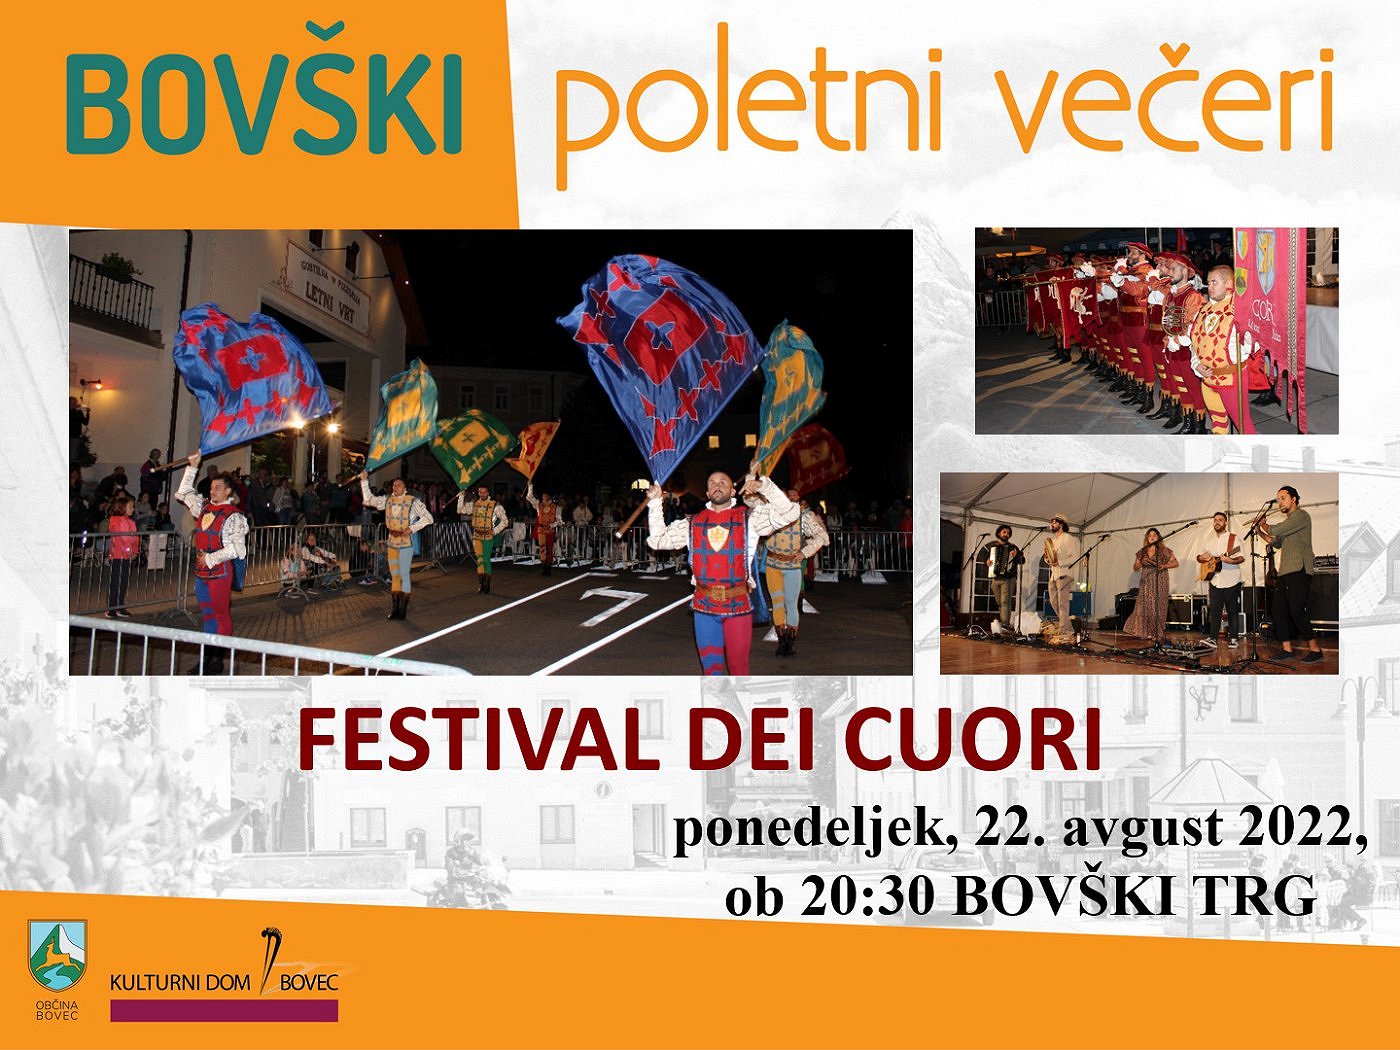 Bovški poletni večeri 2022 - Festival dei cuori